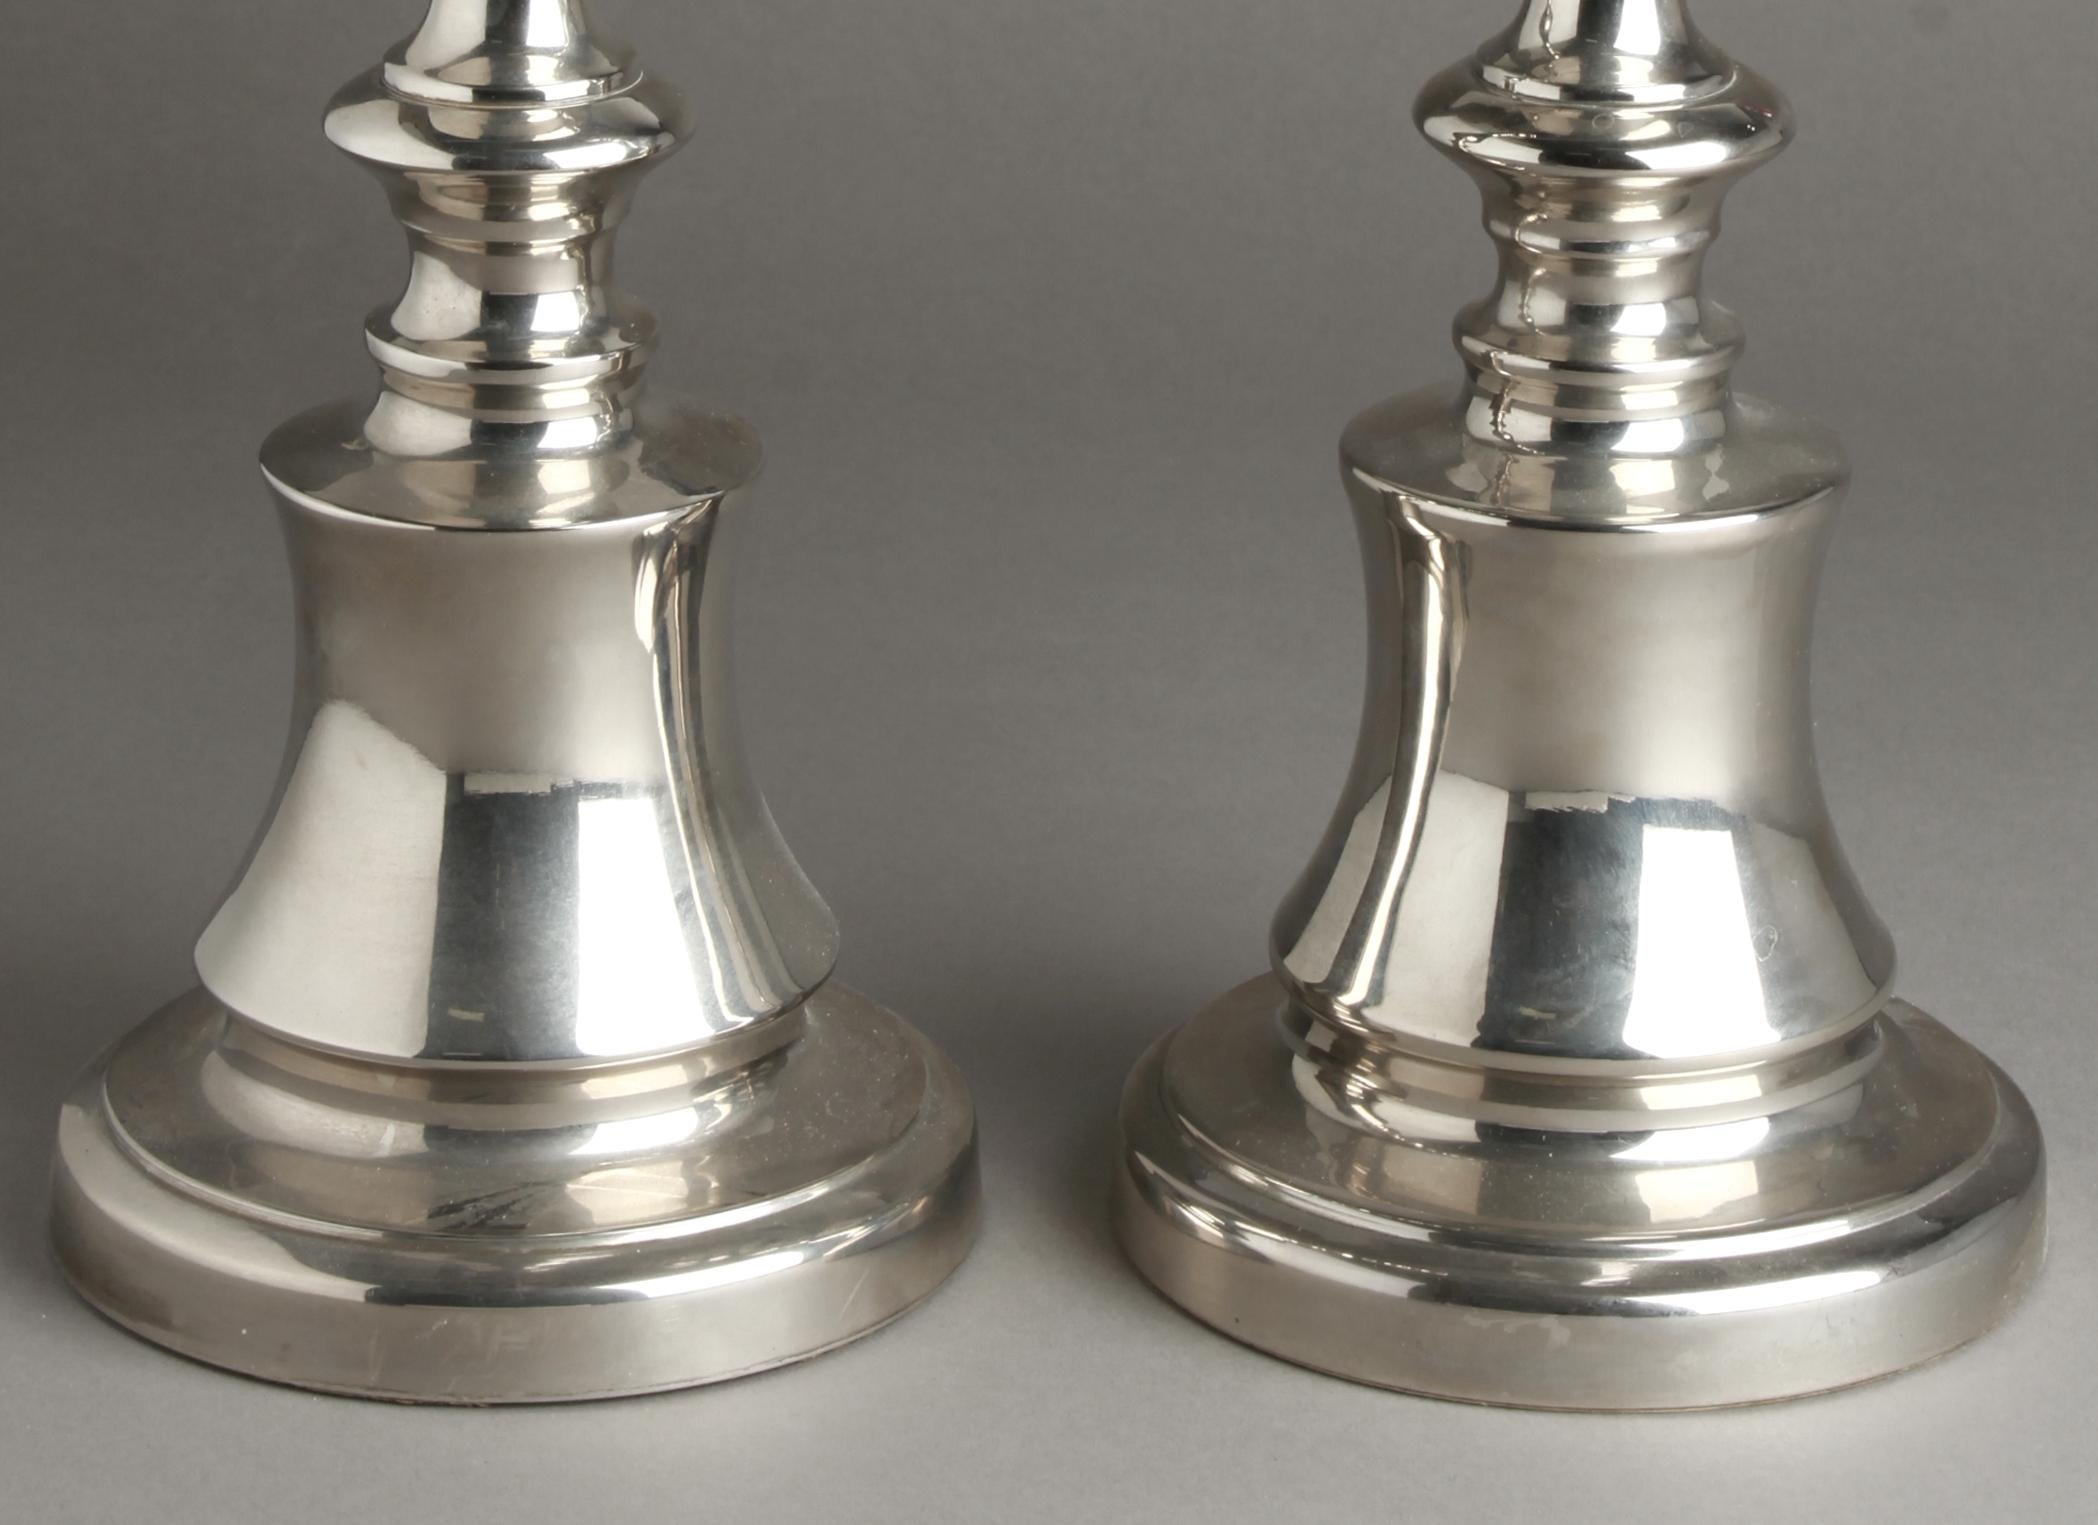 Paire de chandeliers de style classique en fonte d'aluminium de couleur argentée. La paire est en excellent état vintage avec une usure appropriée à l'âge.